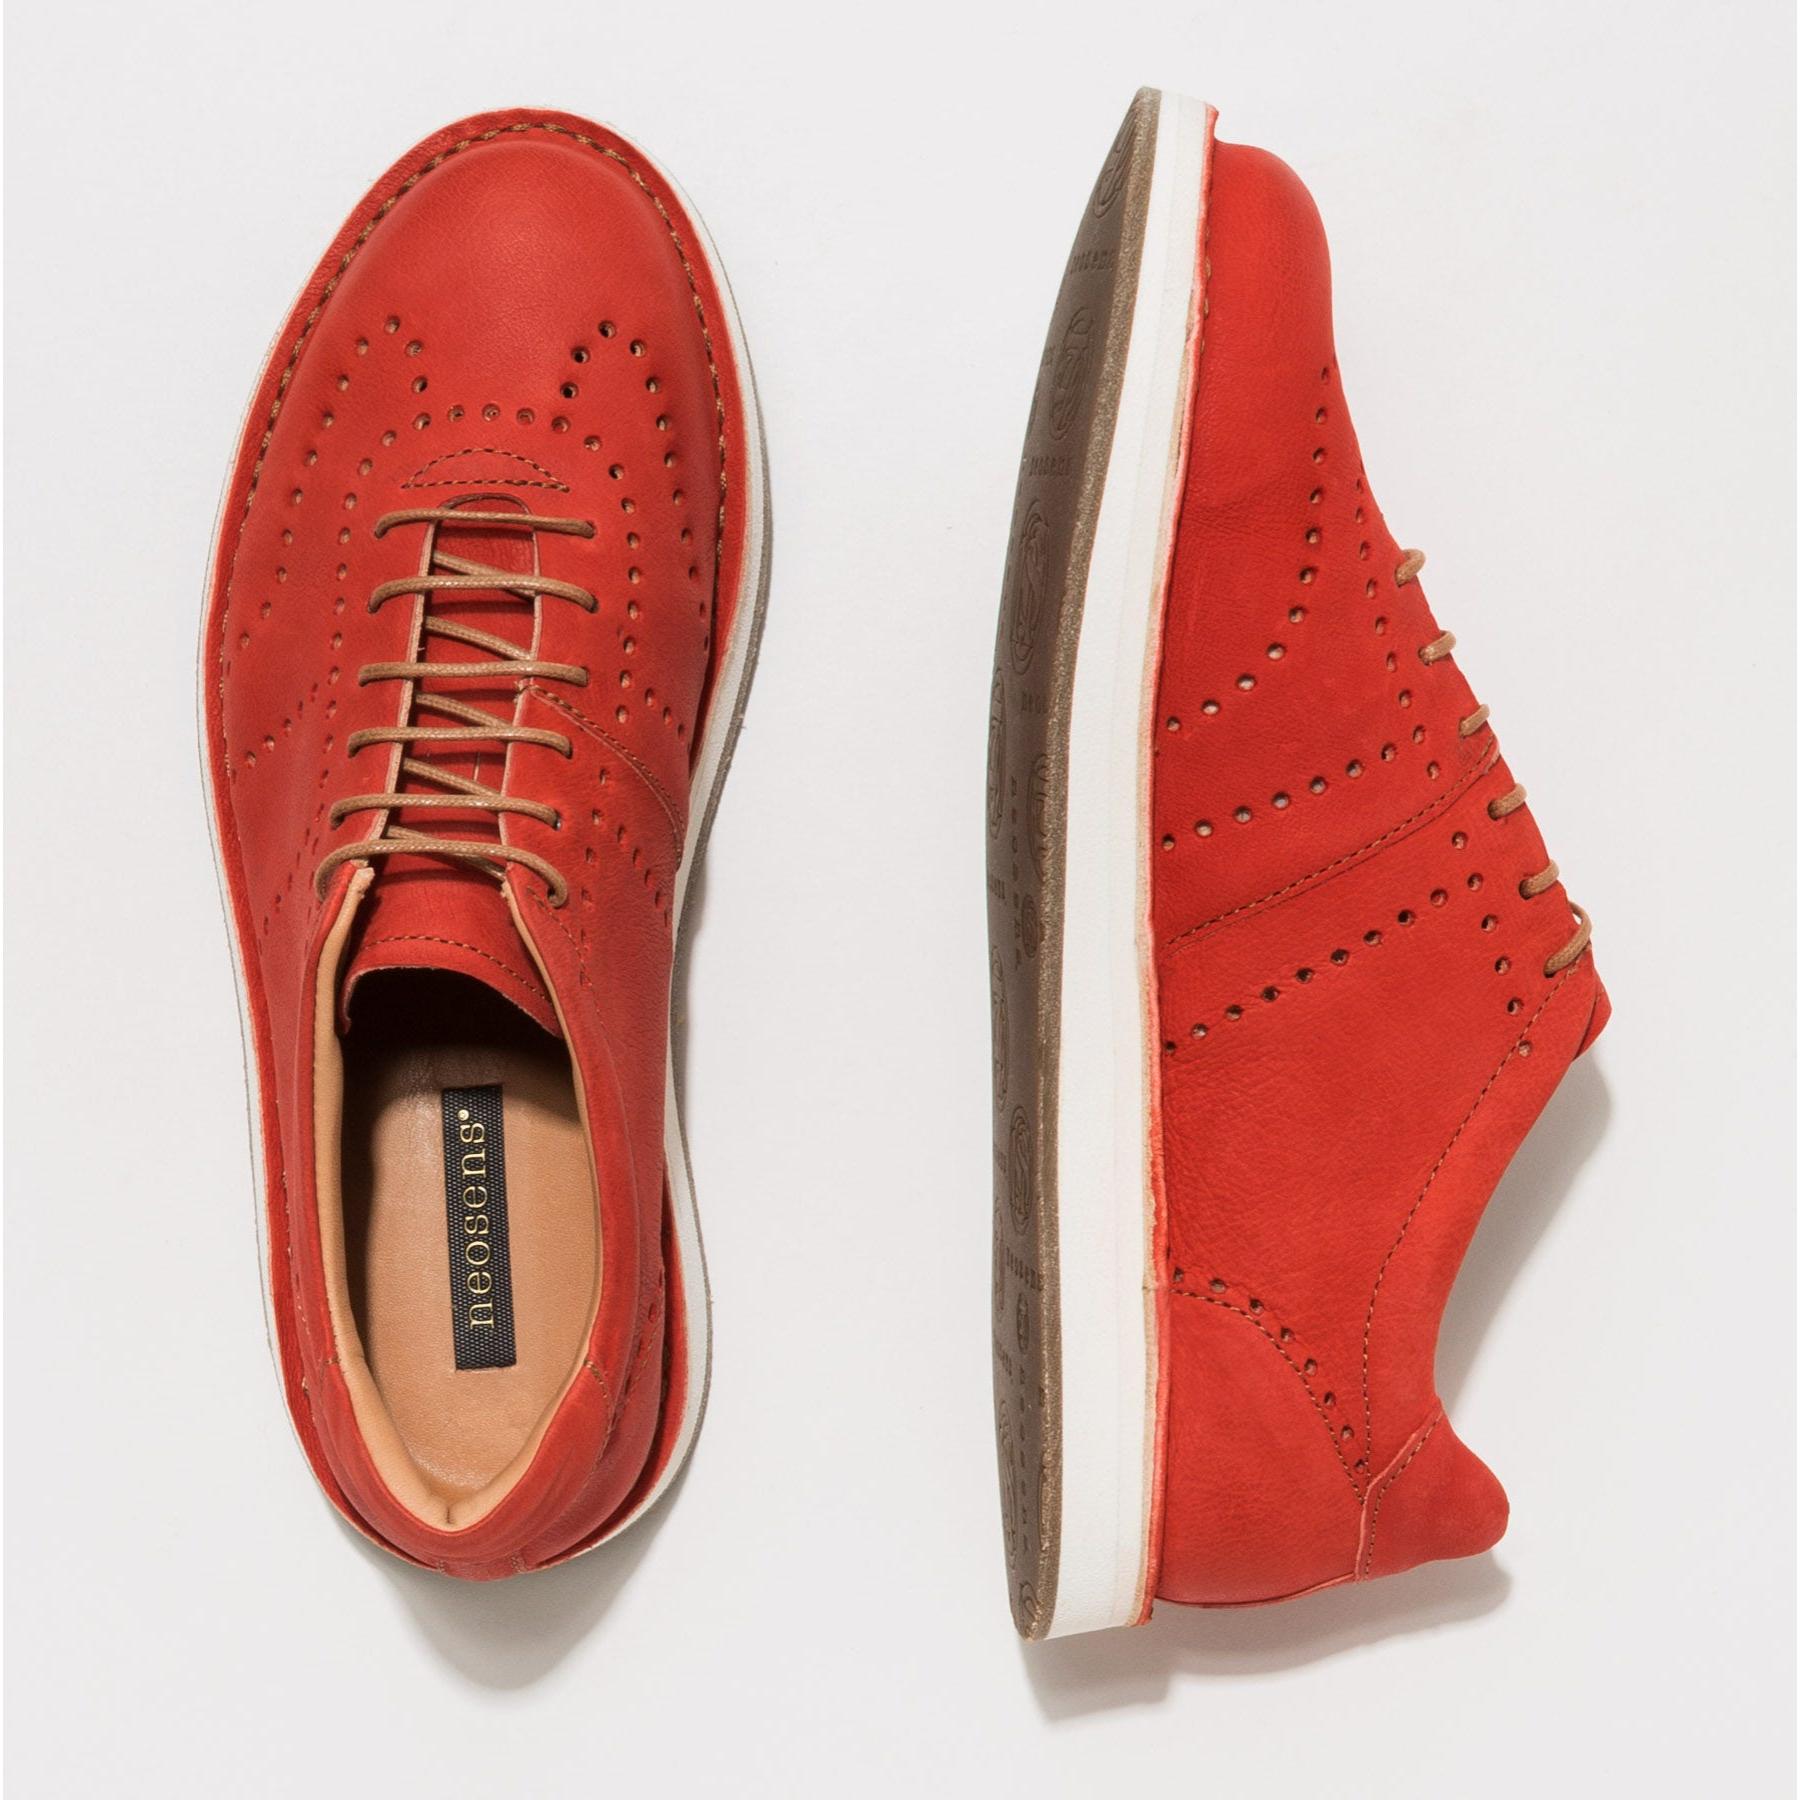 Zapatos S3015 TEXAS CORAL / ALBARELLO color Coral